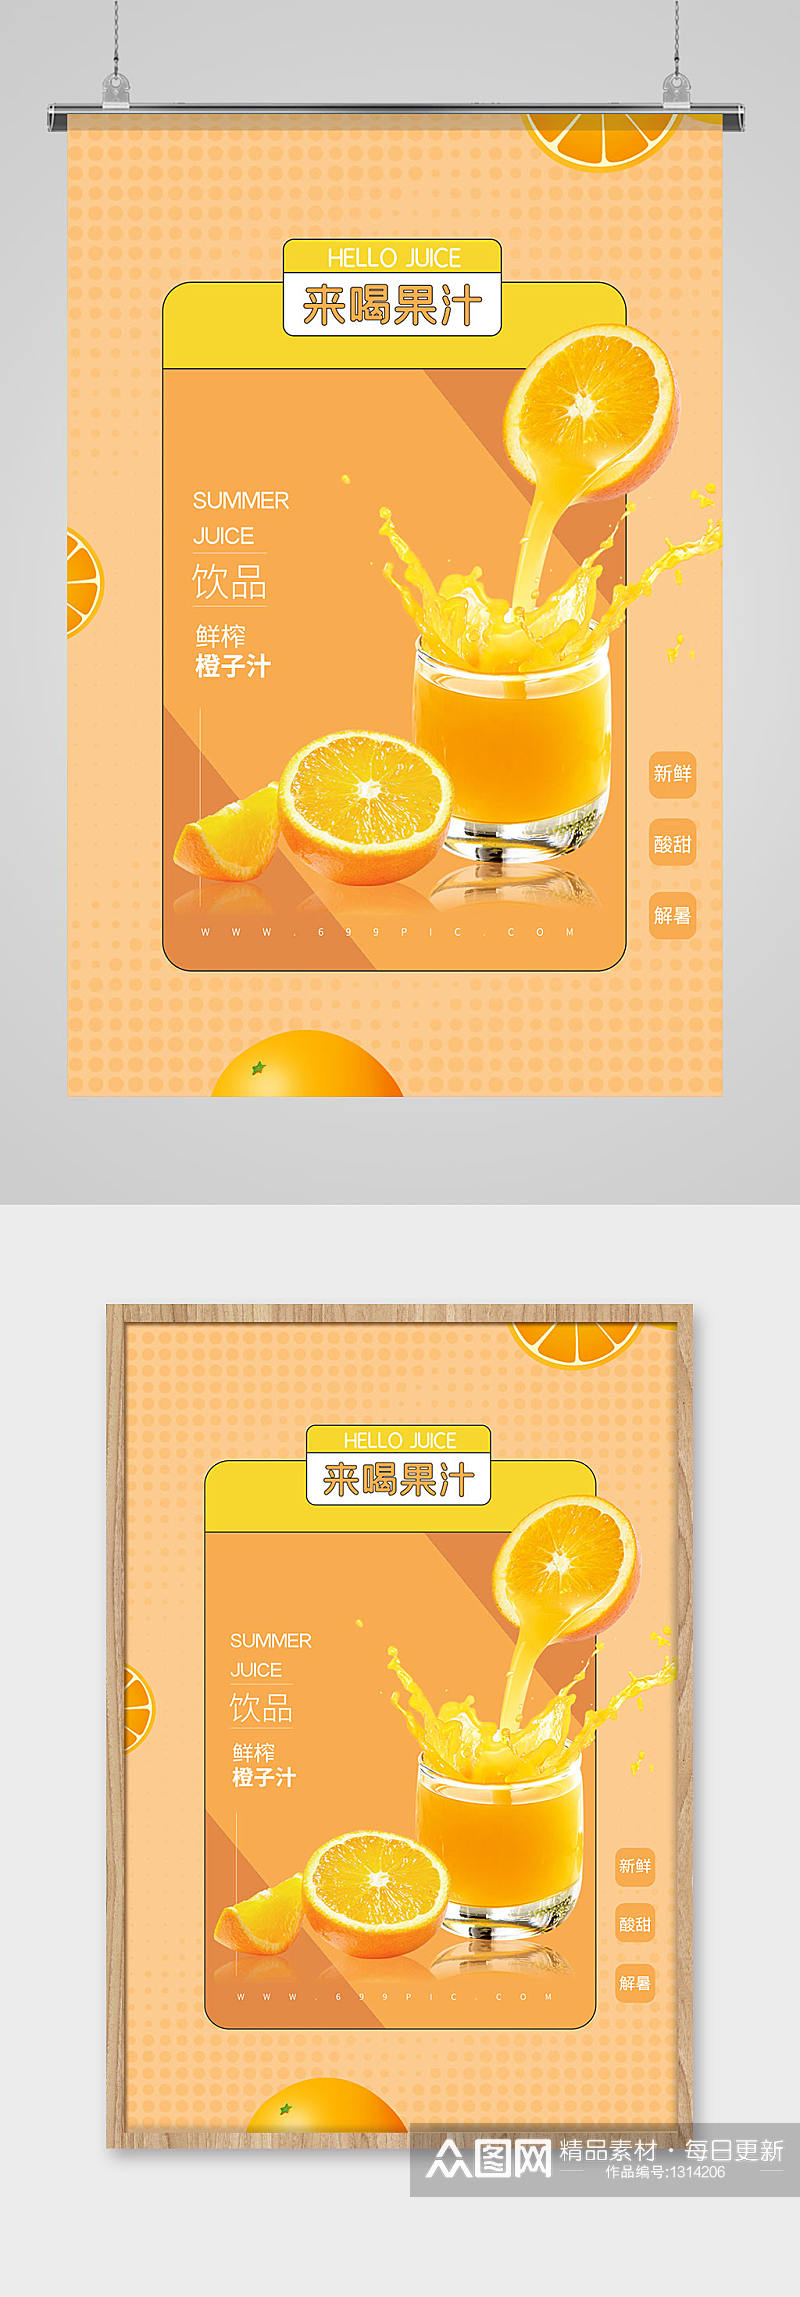 夏季鲜榨橙汁饮品海报素材